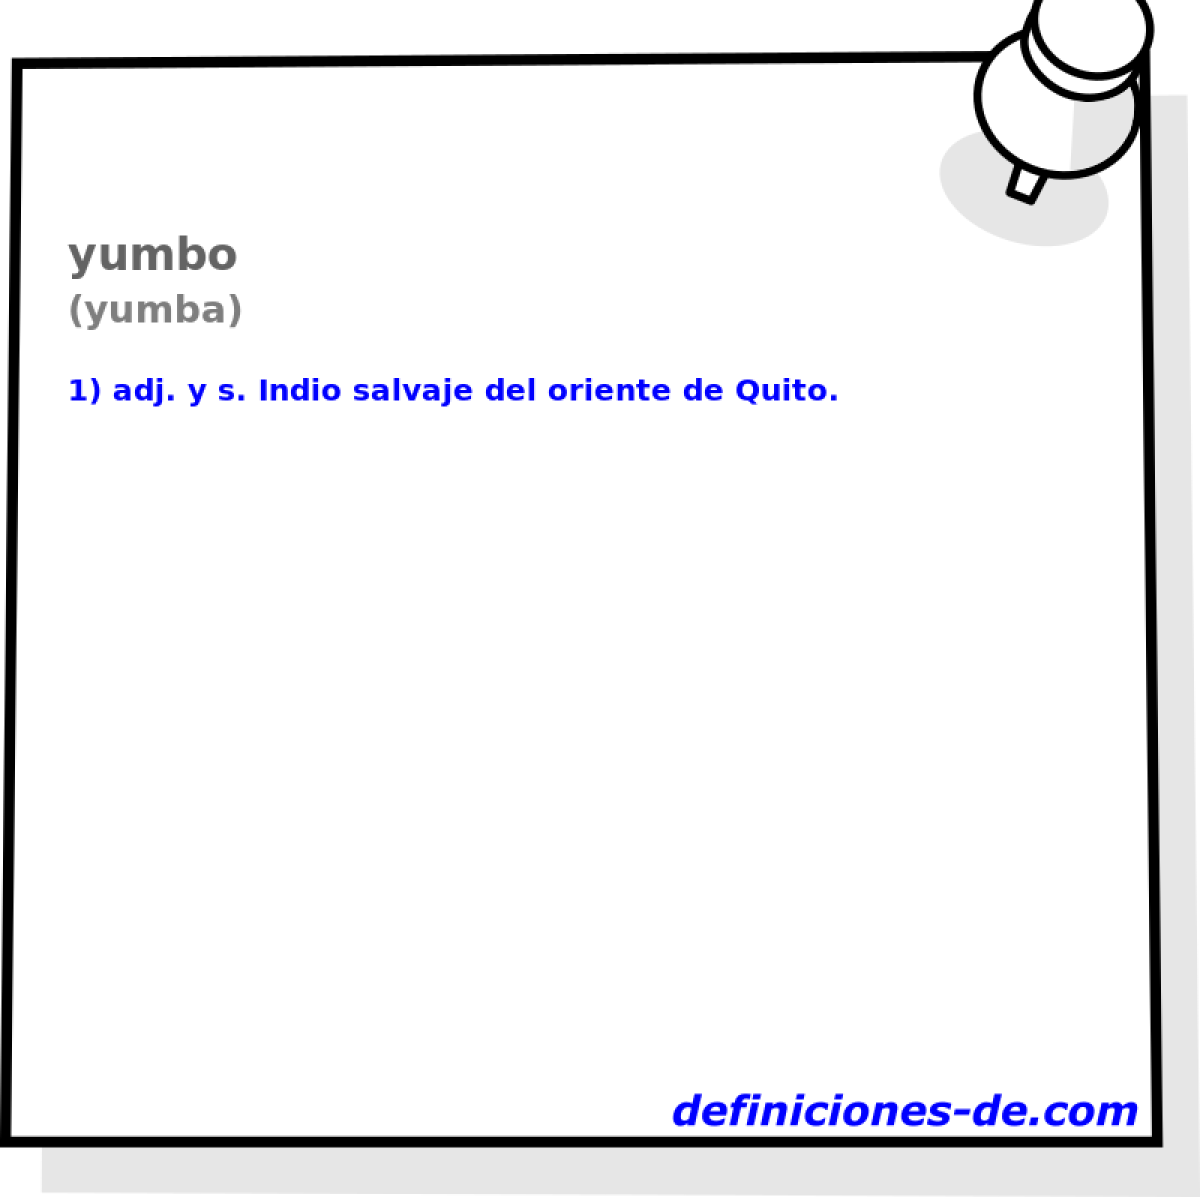 yumbo (yumba)